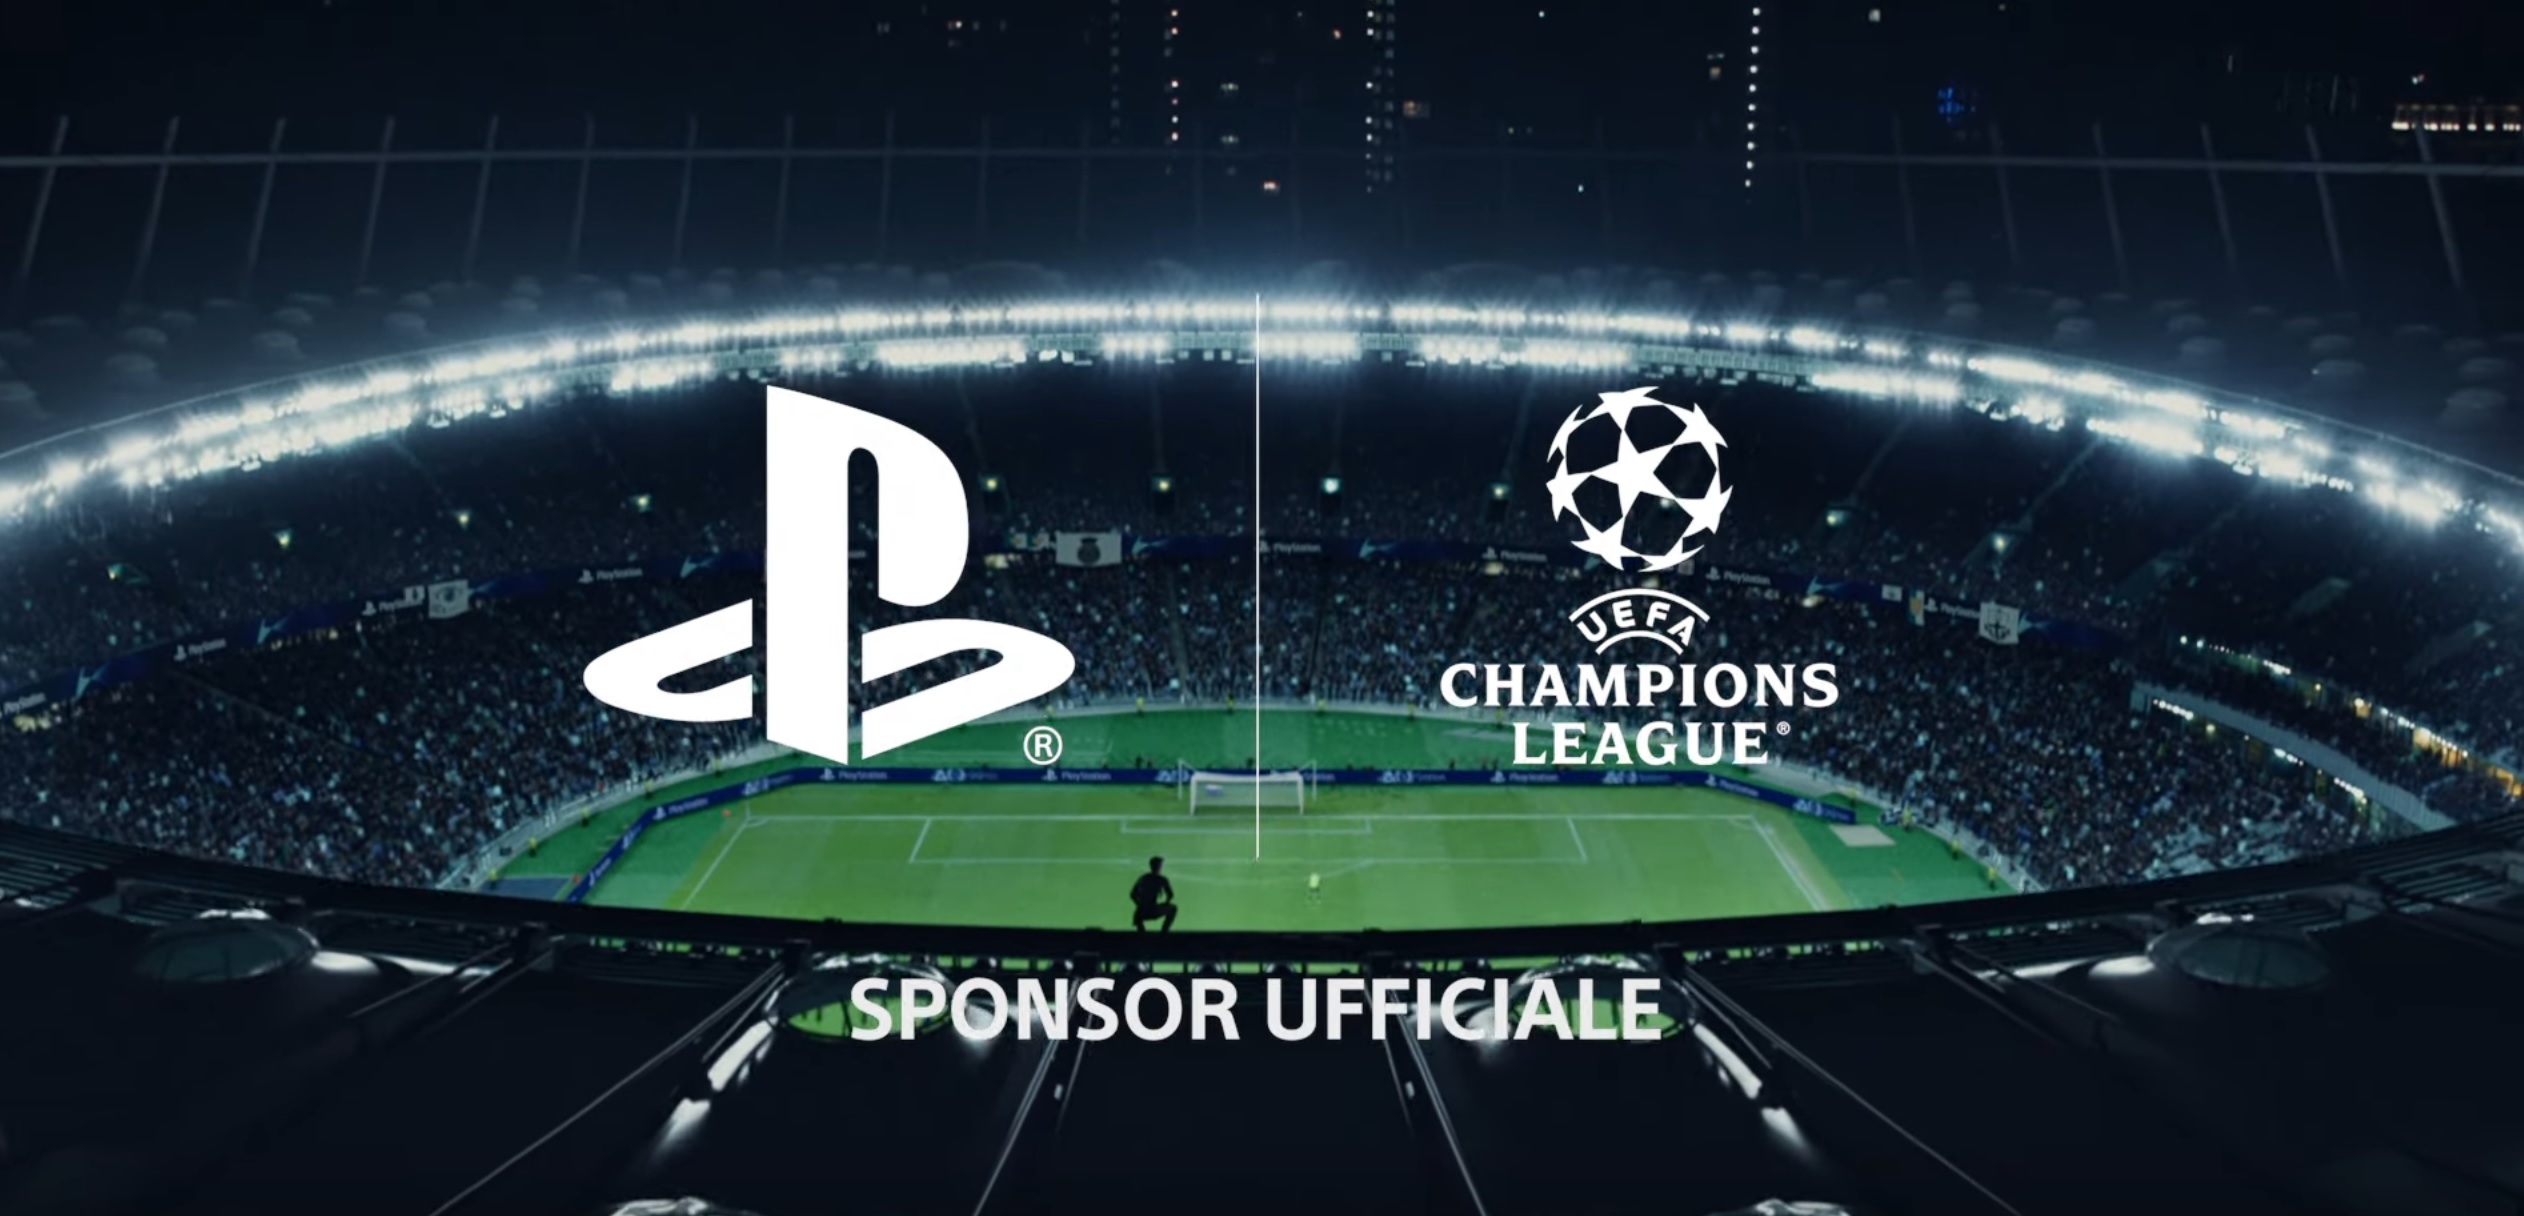 PlayStation lancia il nuovo spot TV per la UEFA Champions League 